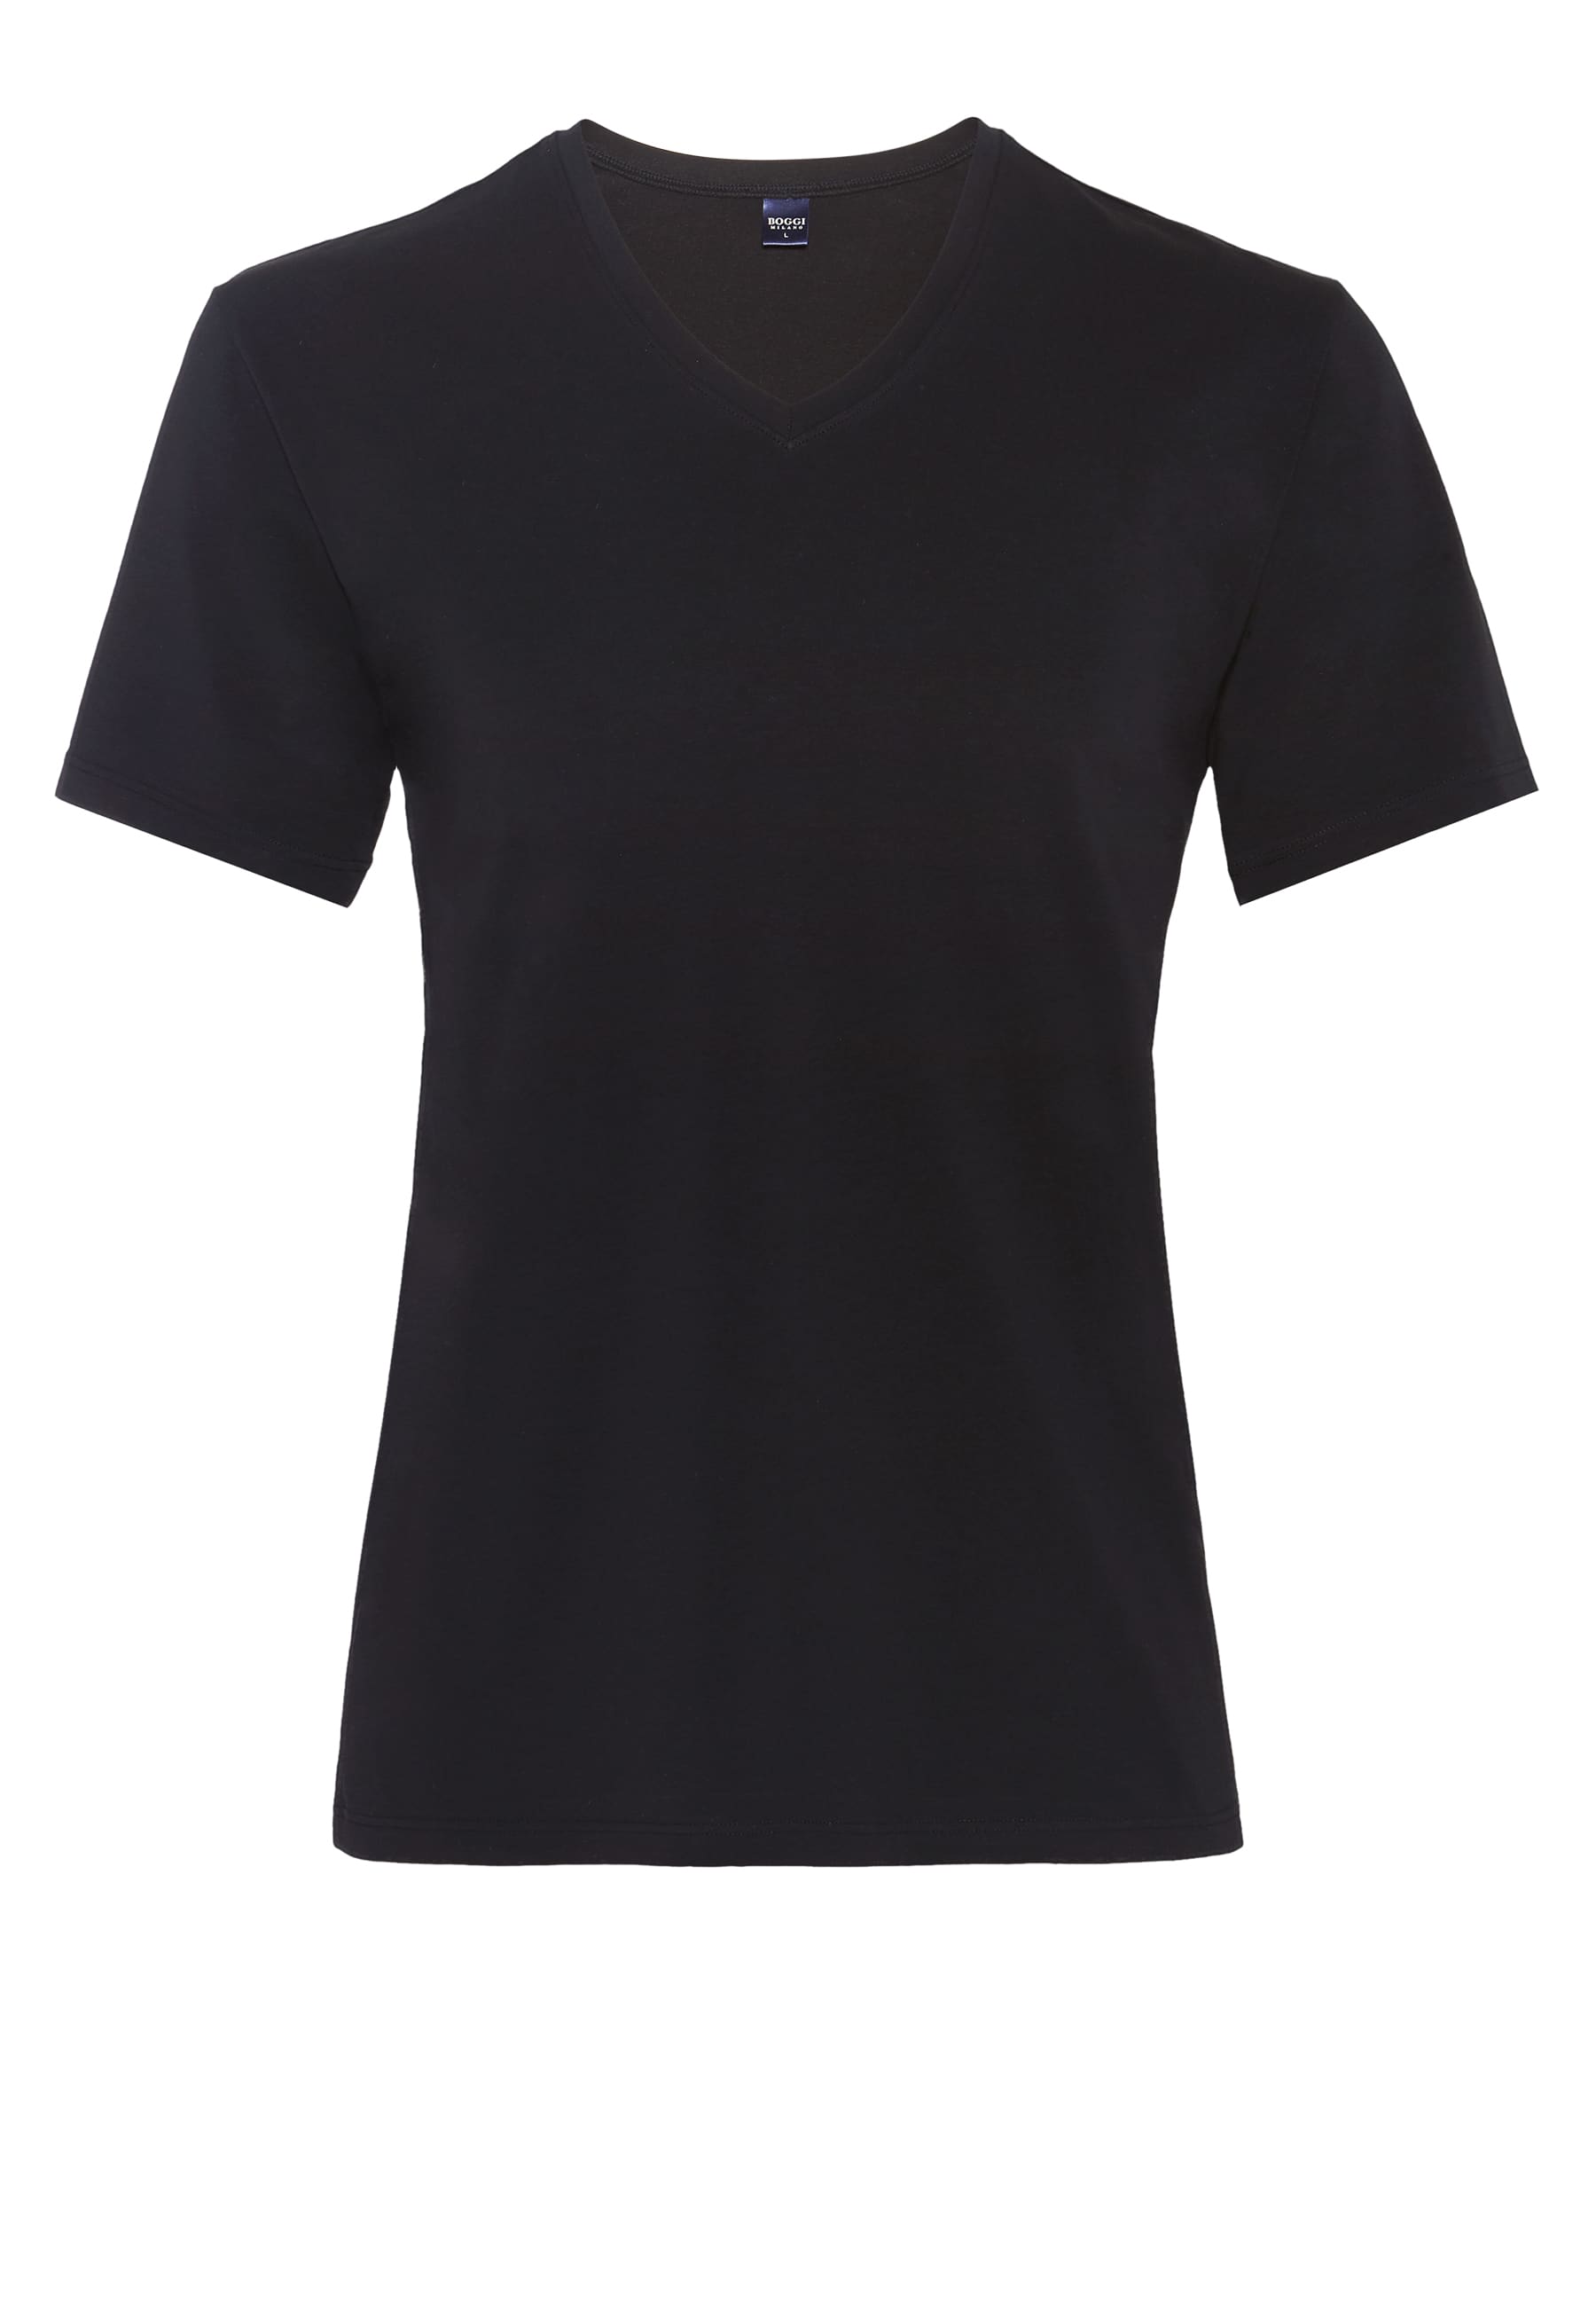 Odzież Nin9v Boggi Milano Koszulka w kolorze Czarnym 